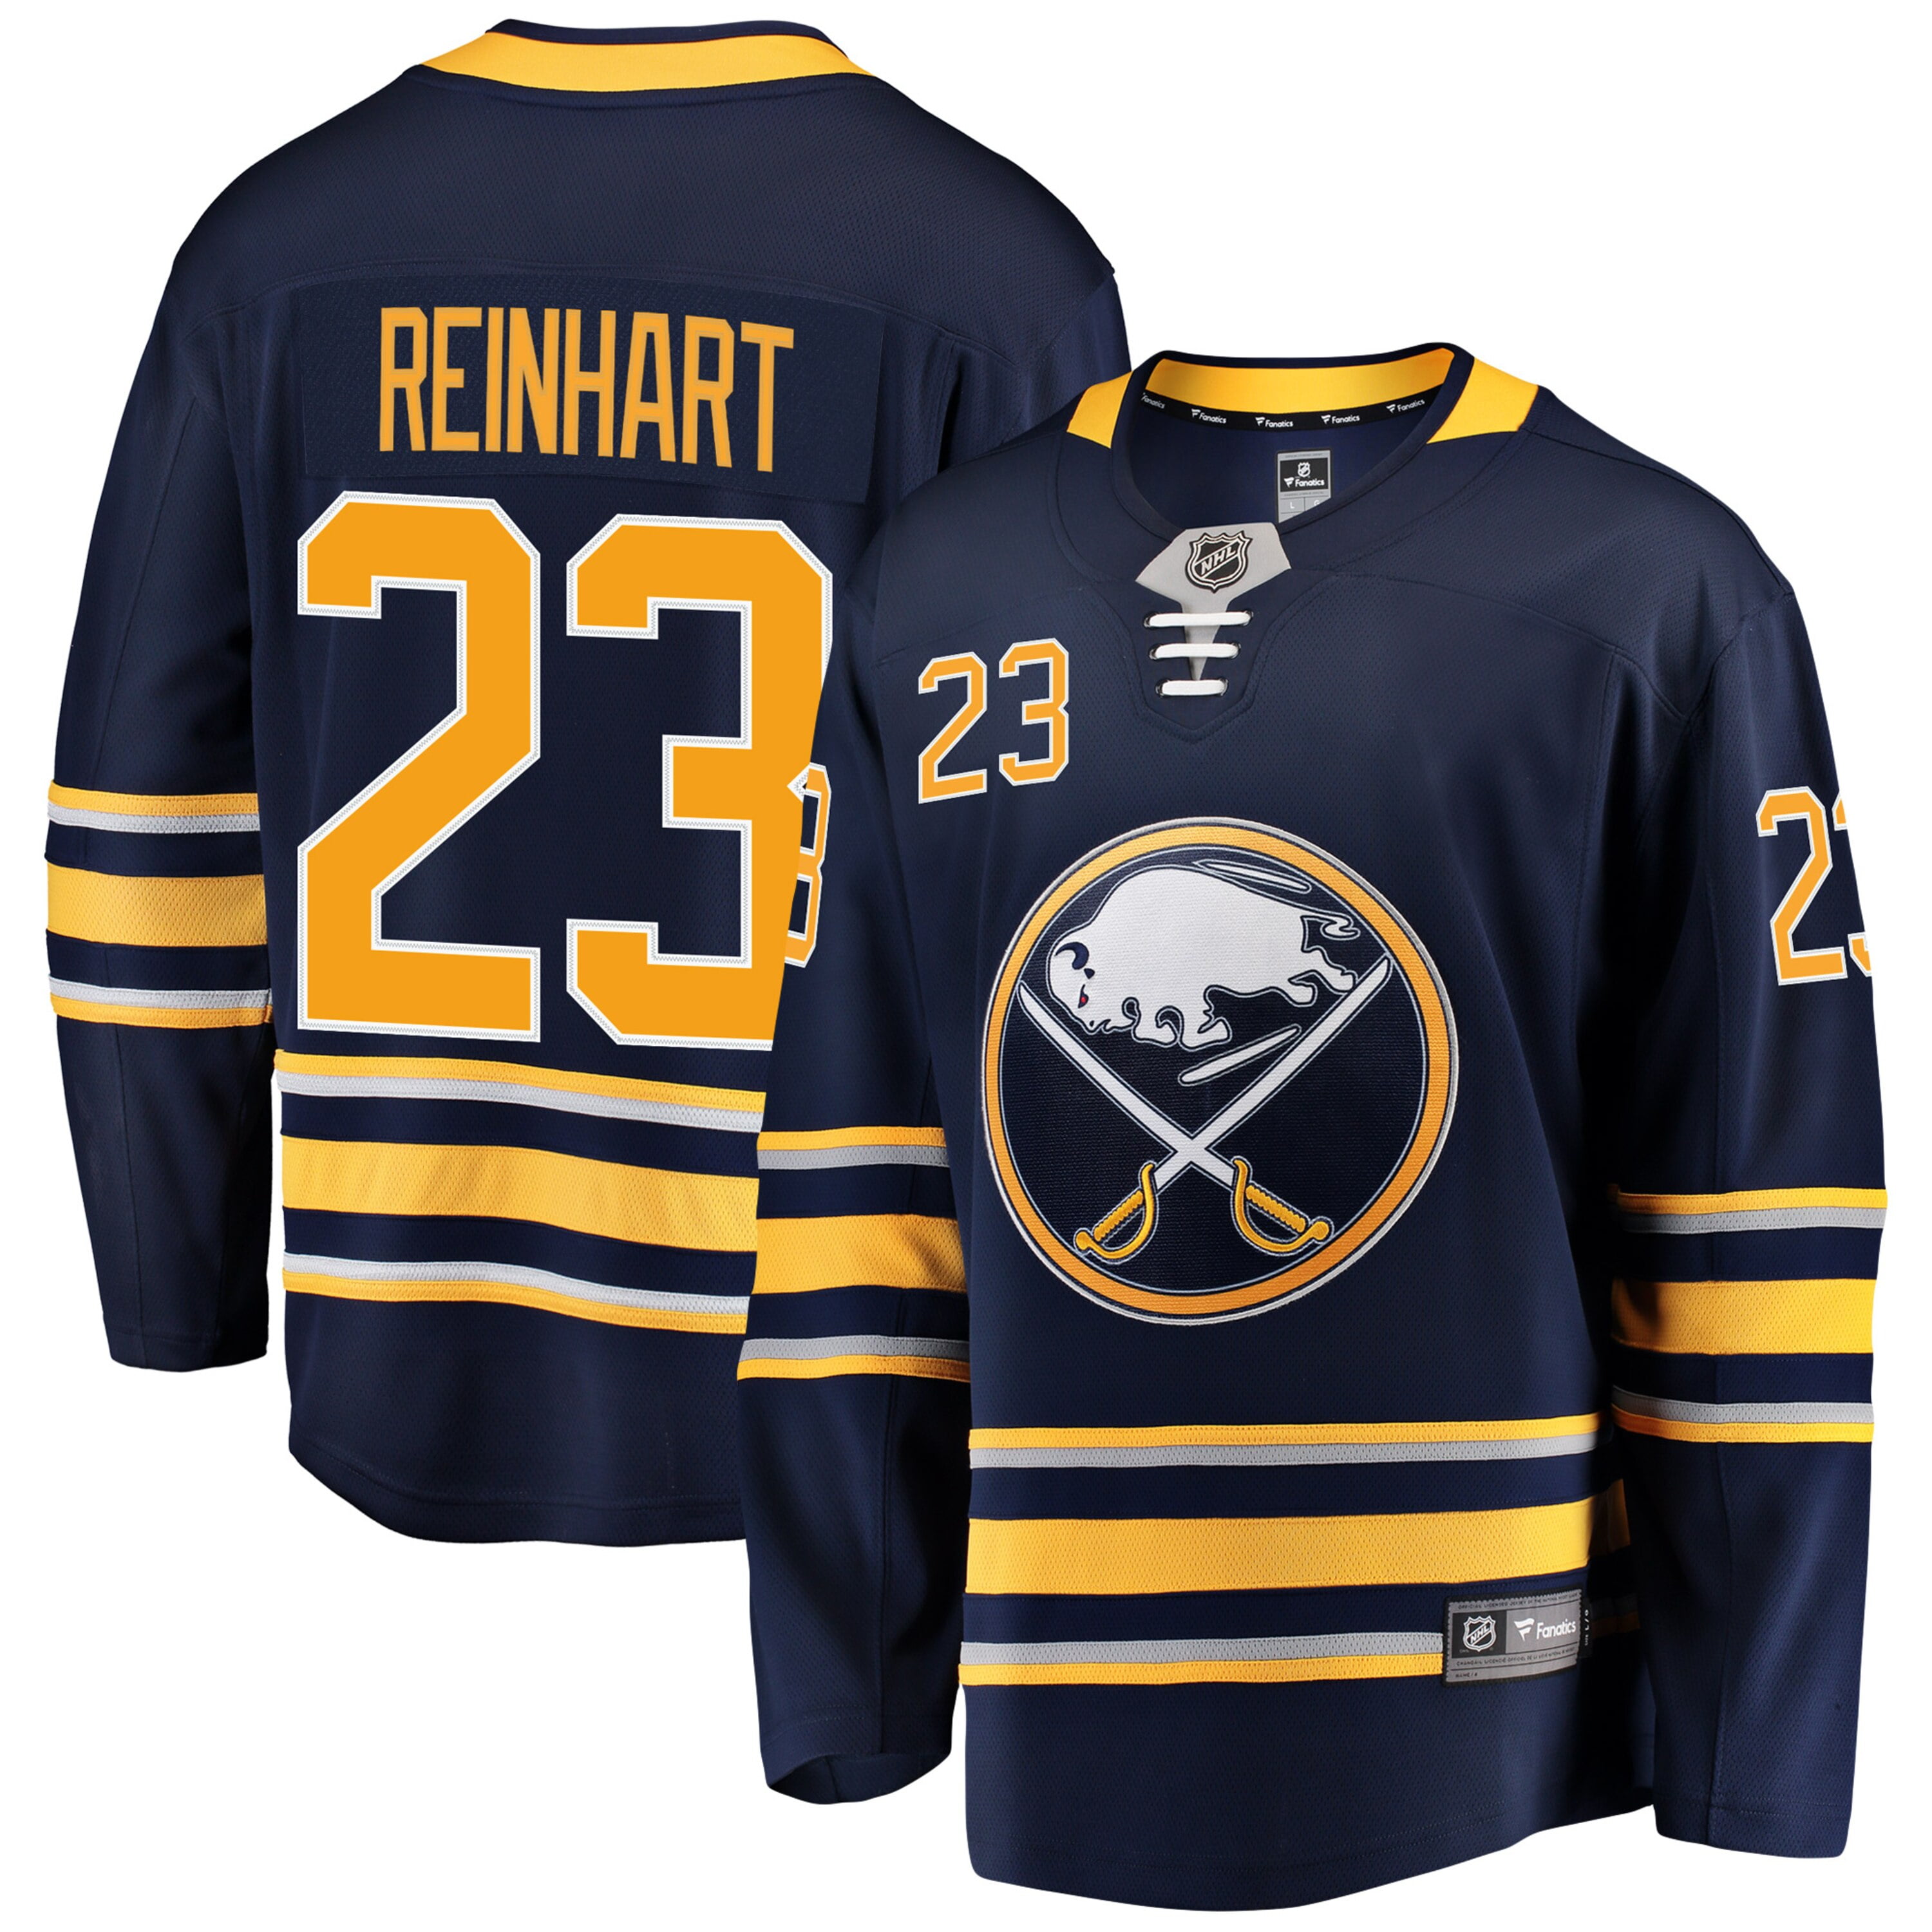 reinhart jersey